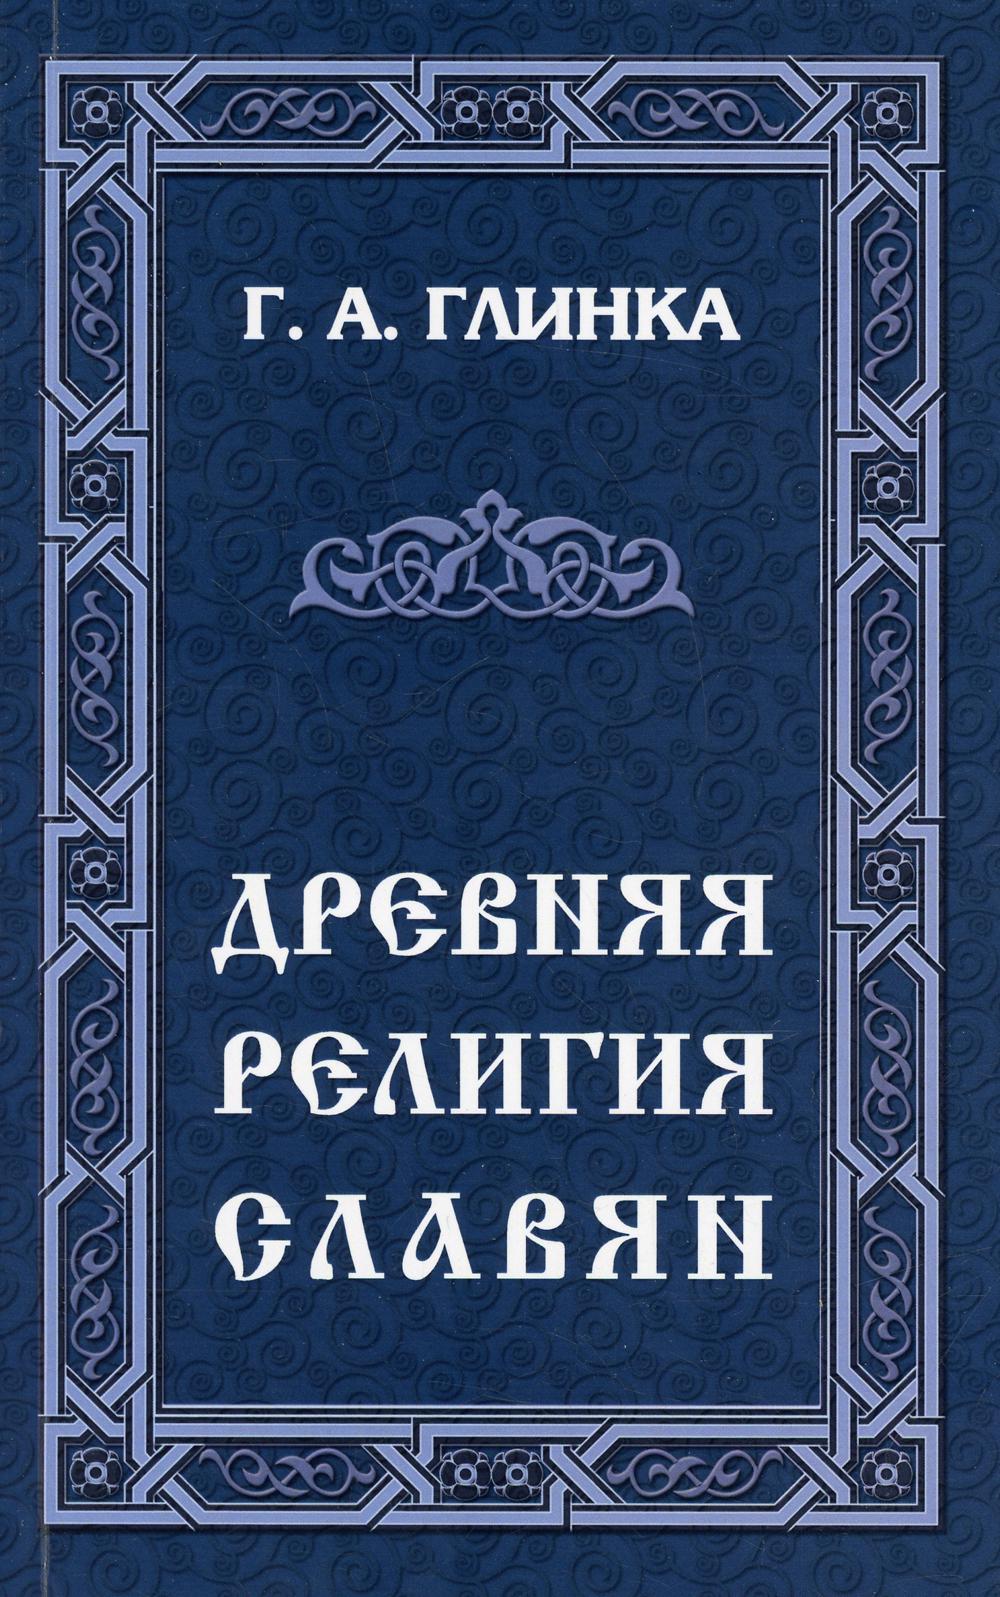 фото Книга древняя религия славян амрита